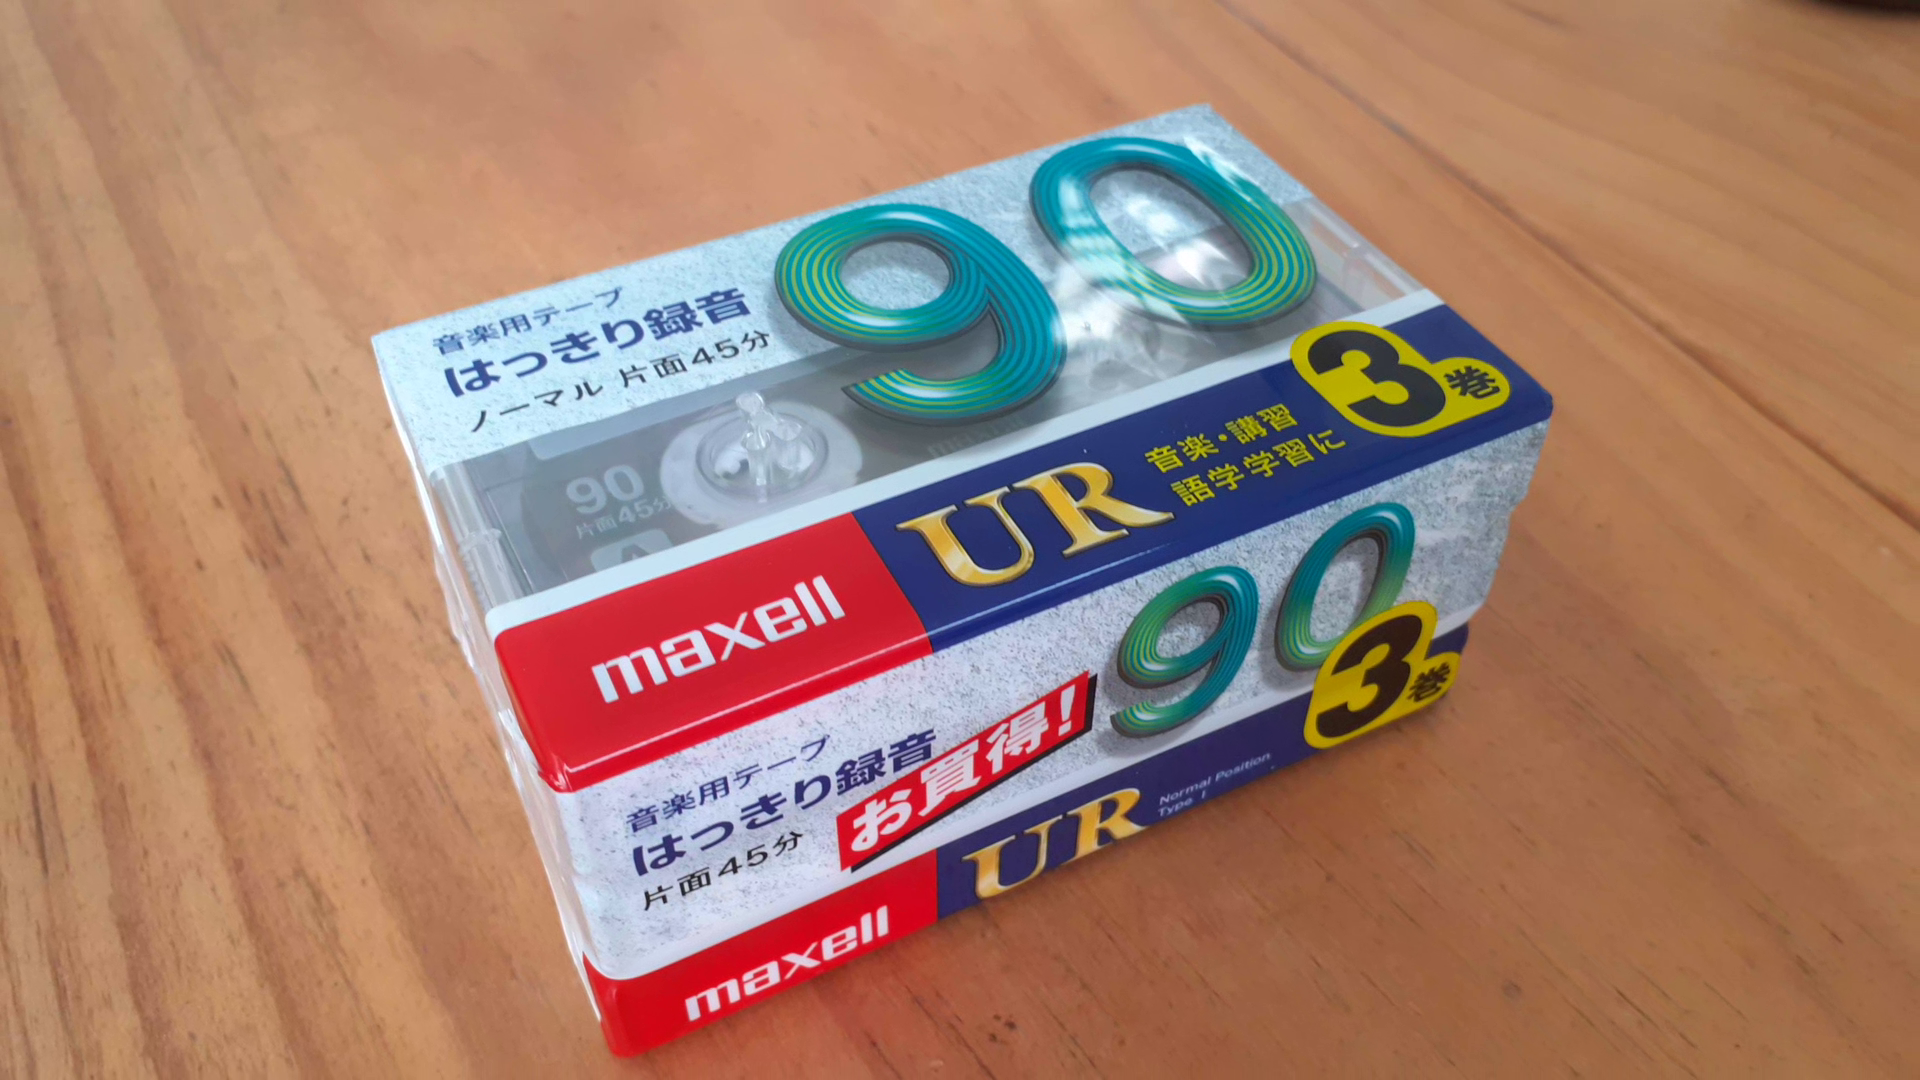 Bộ 3 băng Cassette MAXELL 90 - Hàng mới nguyên seal Nhật Bản